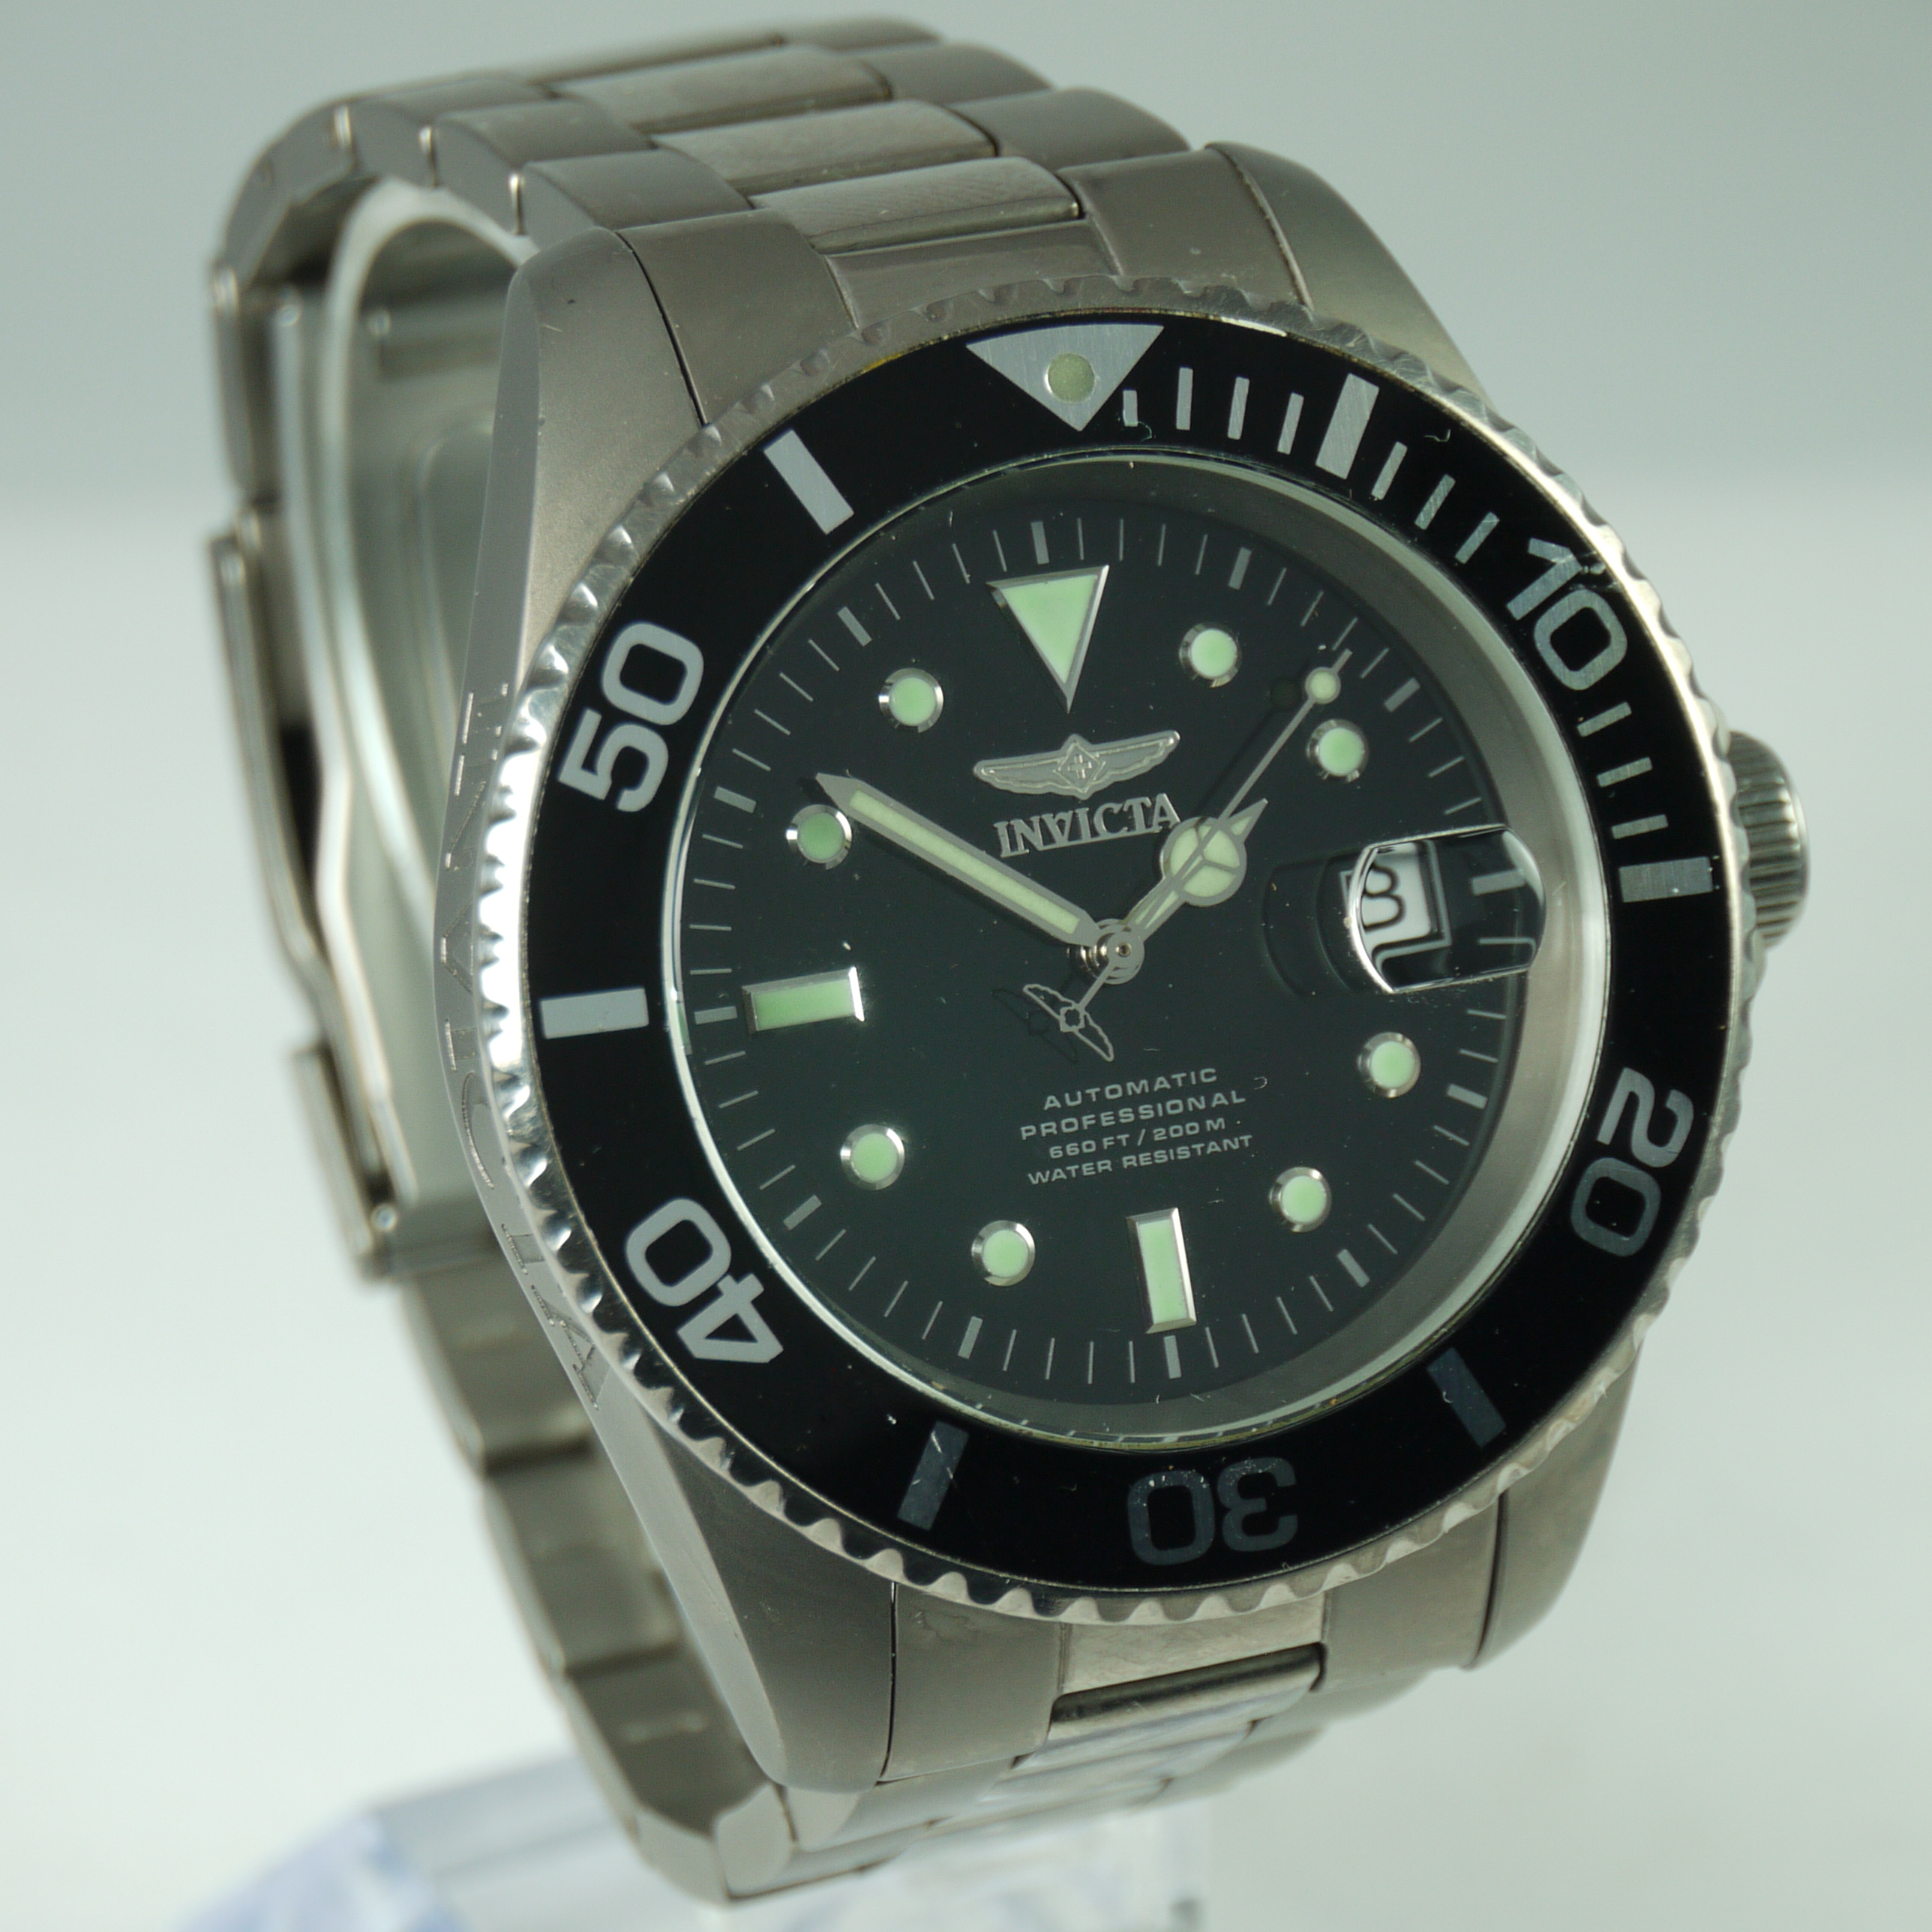 Invicta Pro Diver Watch in titanium case and bracelet